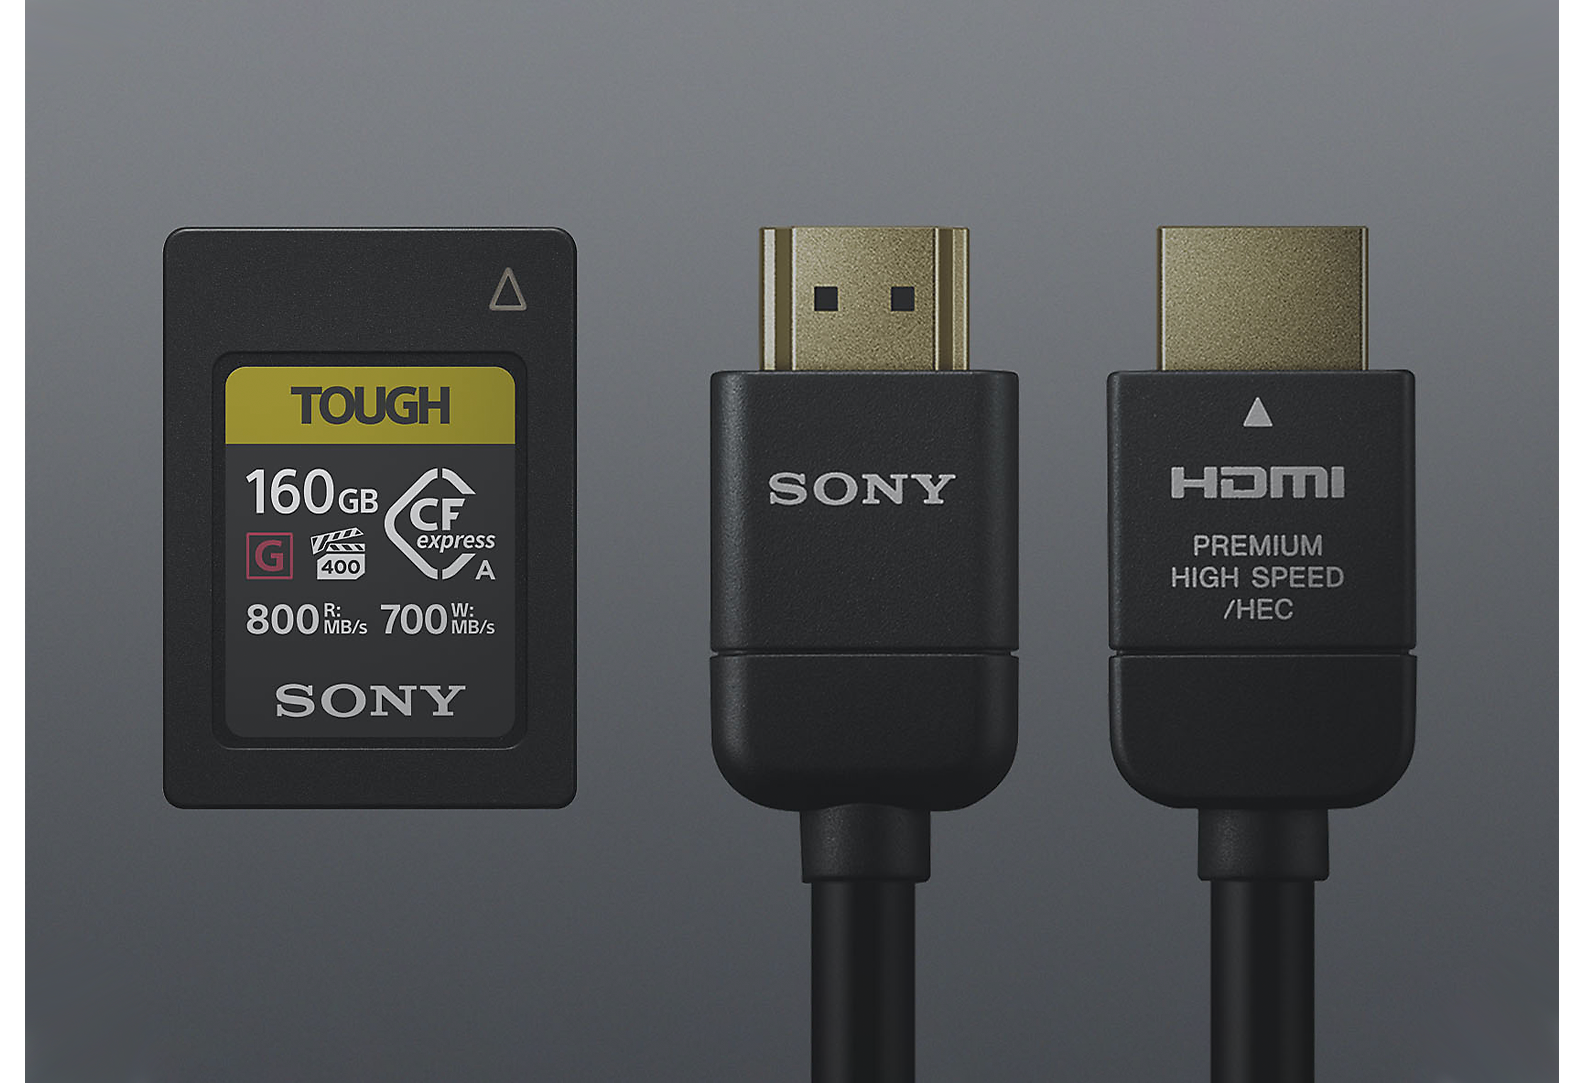 כרטיס Tough SD של Sony ושני כבלי Sony שחורים על רקע אפור